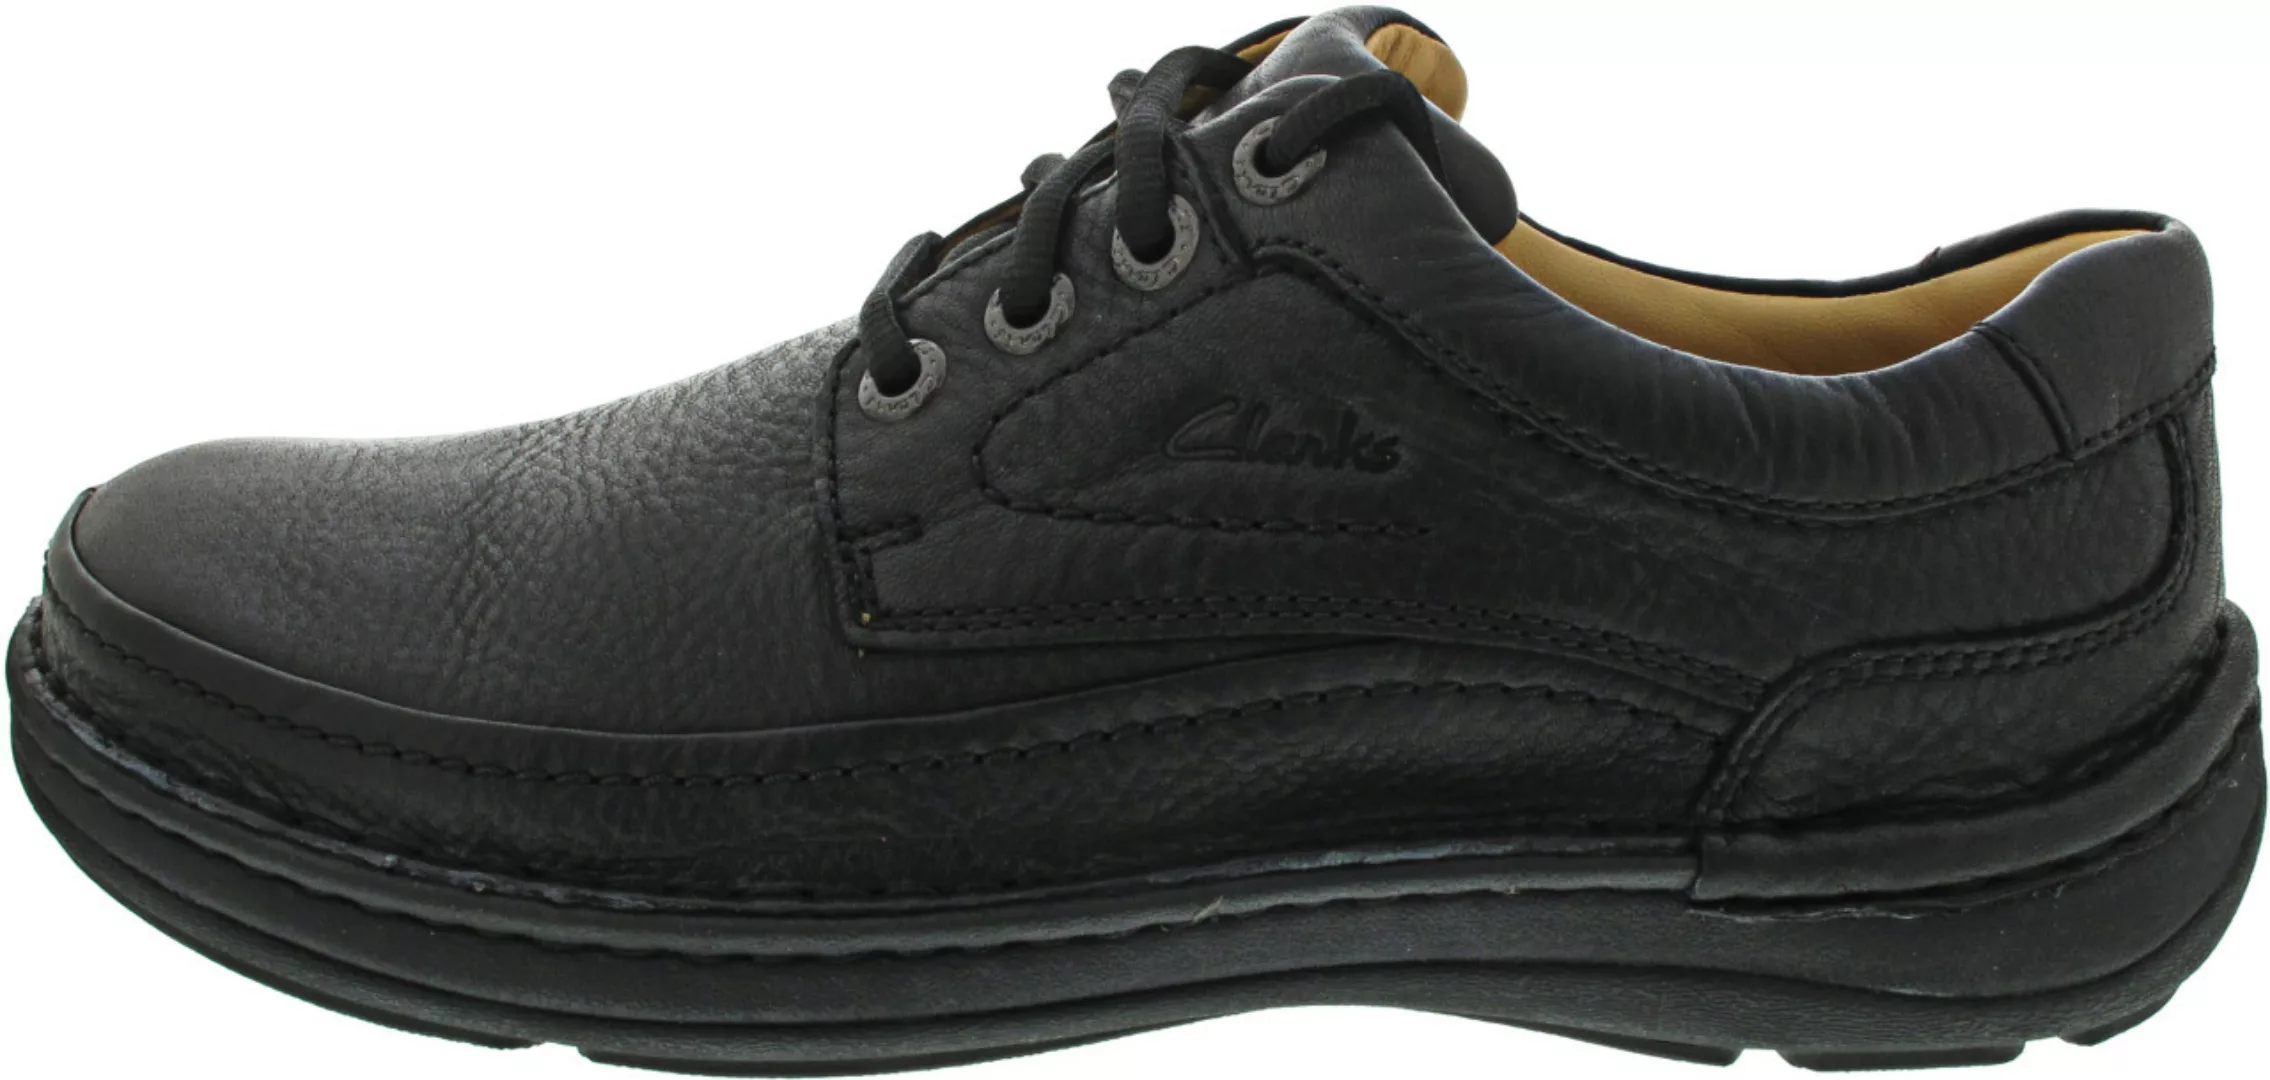 Clarks Nature Three Schuhe EU 41 1/2 Black / Graphite günstig online kaufen